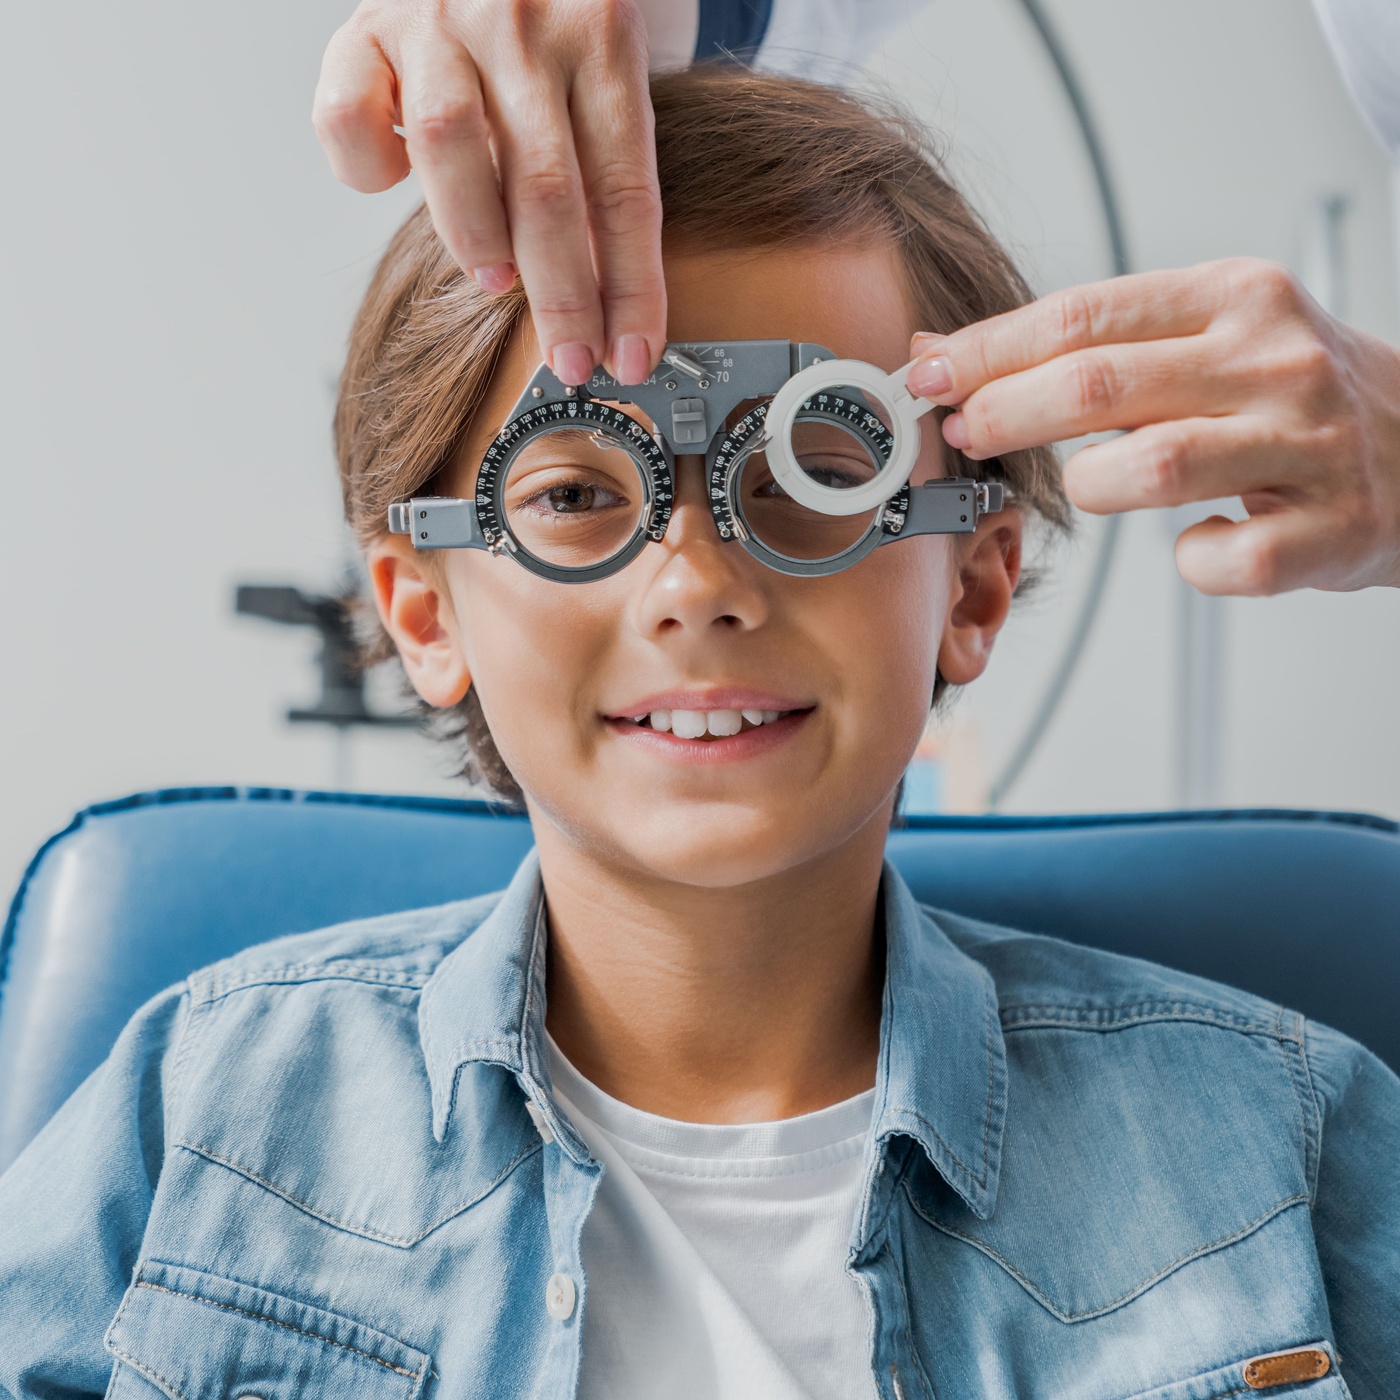 Niño pequeño sonriendo mientras le ponen unas gafas de prueba de diagnóstico ocular.